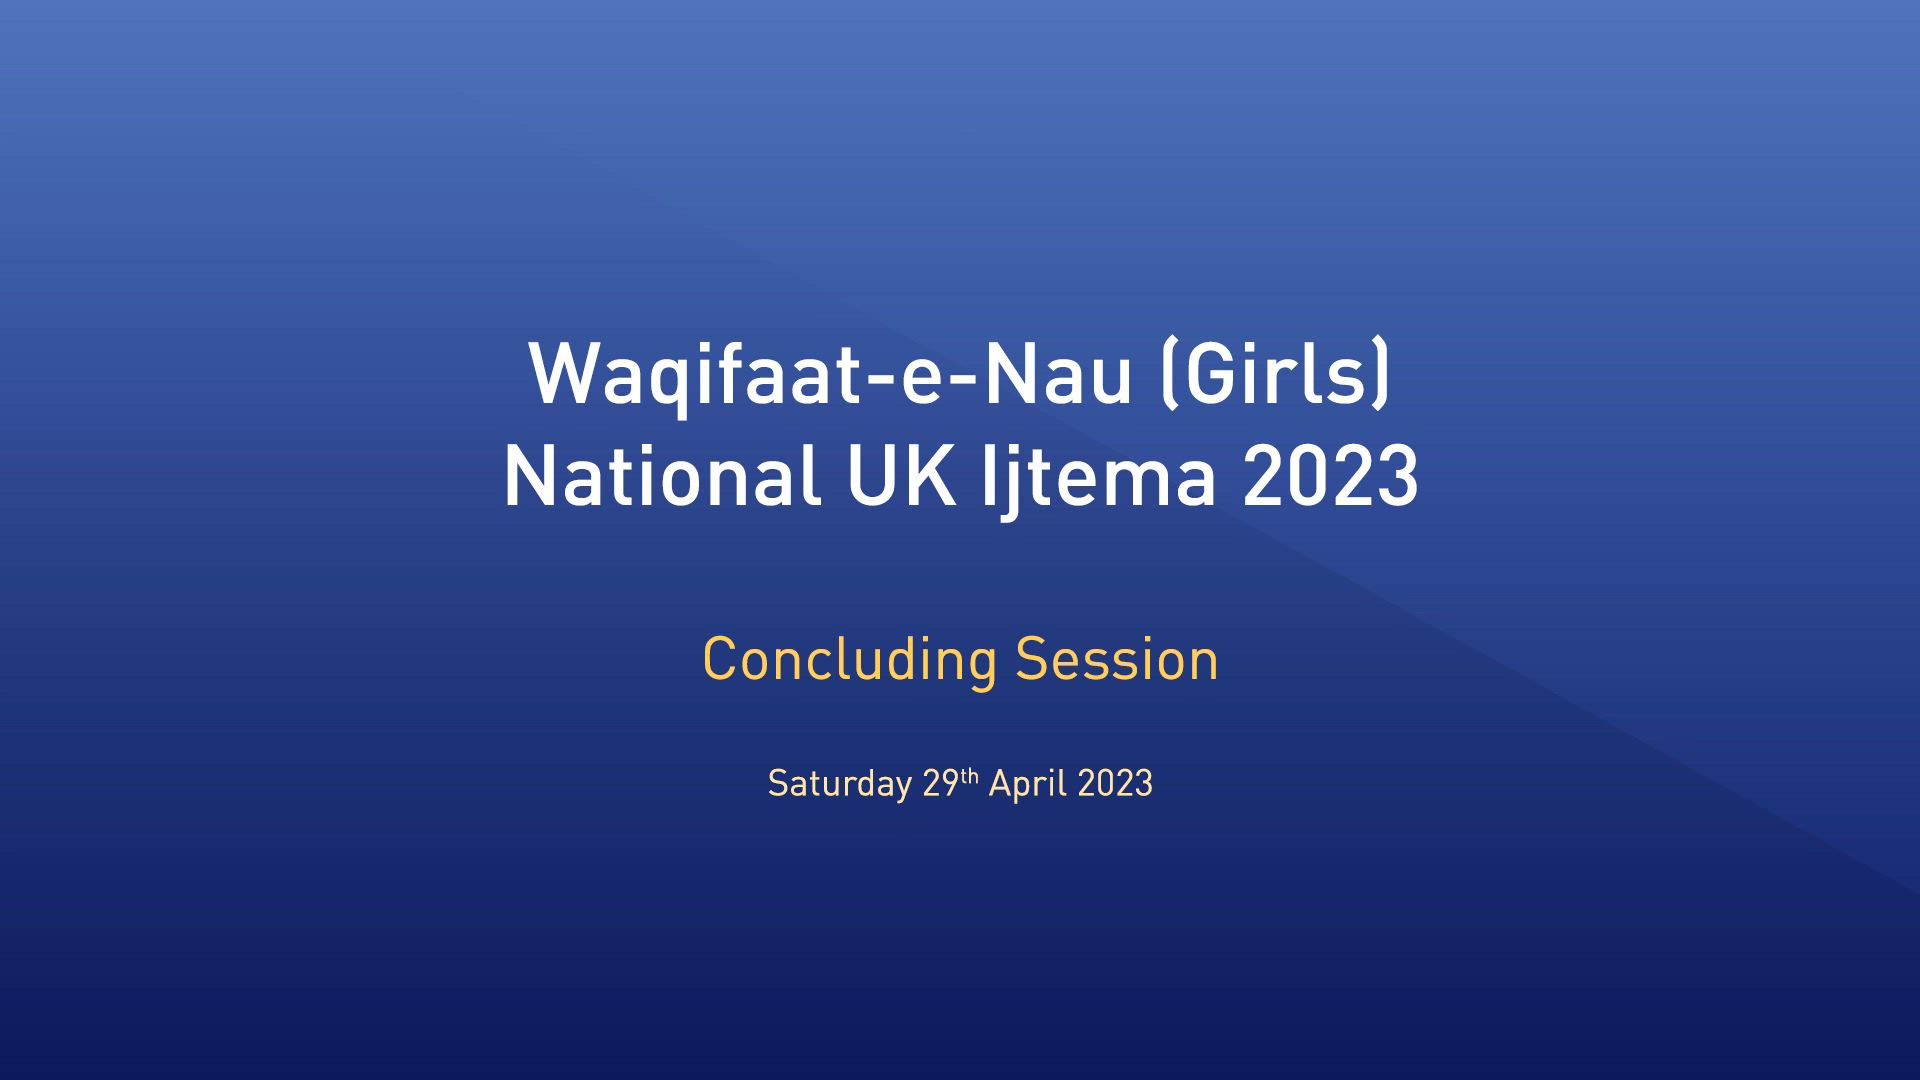 National Waqifat-e-Nau Ijtema